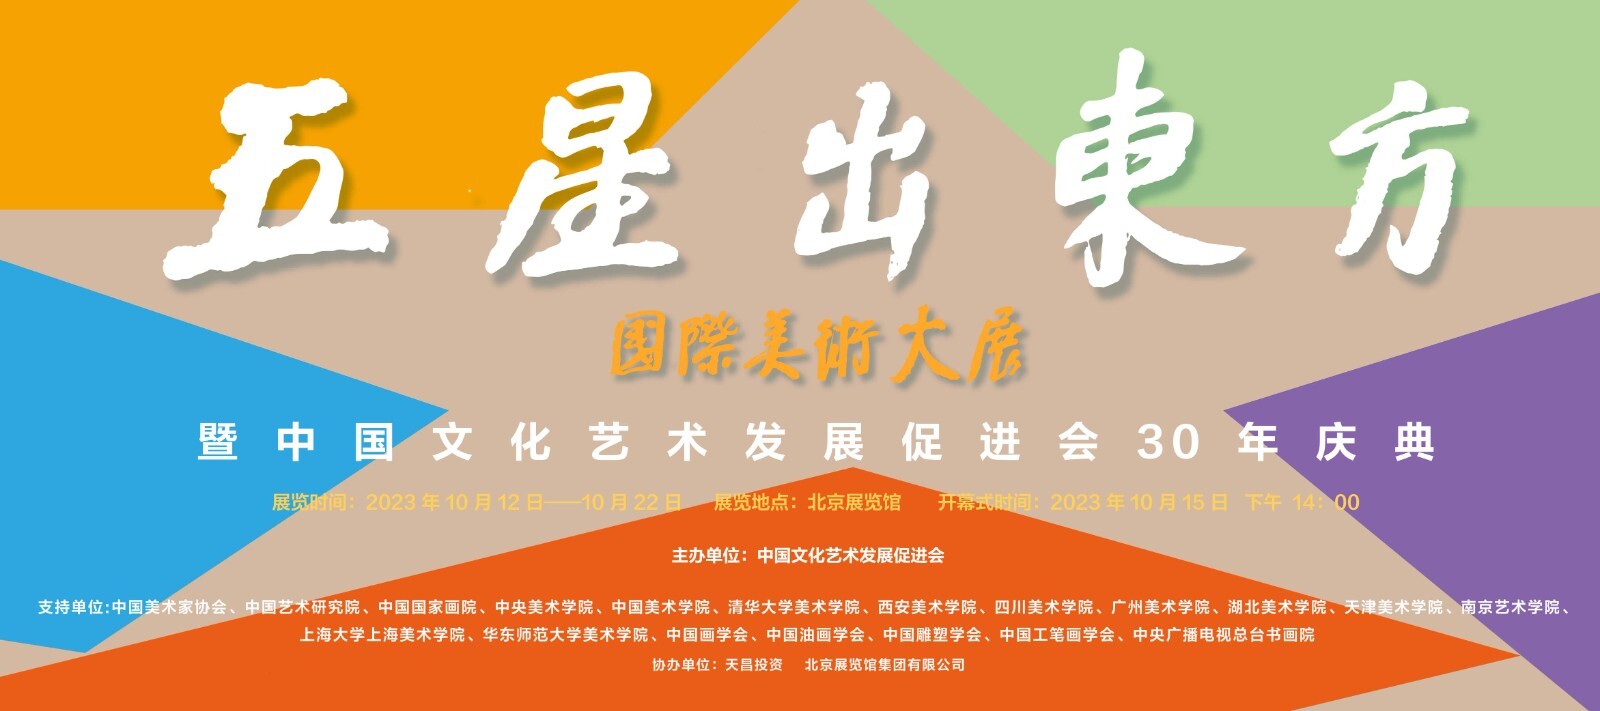 《五星出东方》中国文促会三十年庆典暨国际美术大展闭幕式在京举行